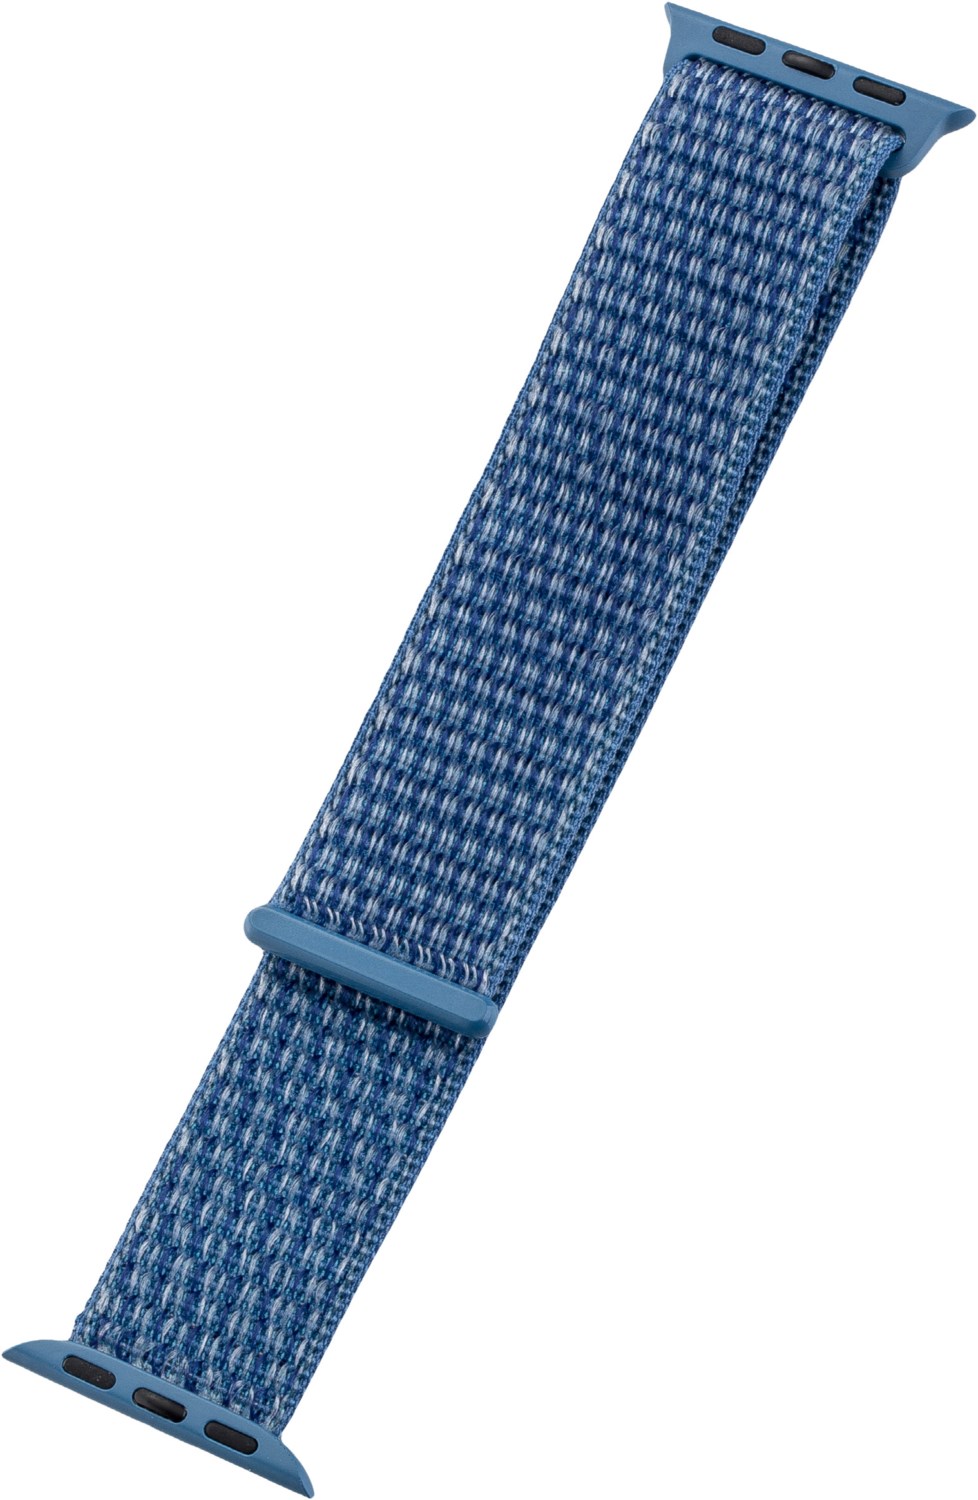 Watch Band Nylon für Apple Watch (44mm/42mm) blau